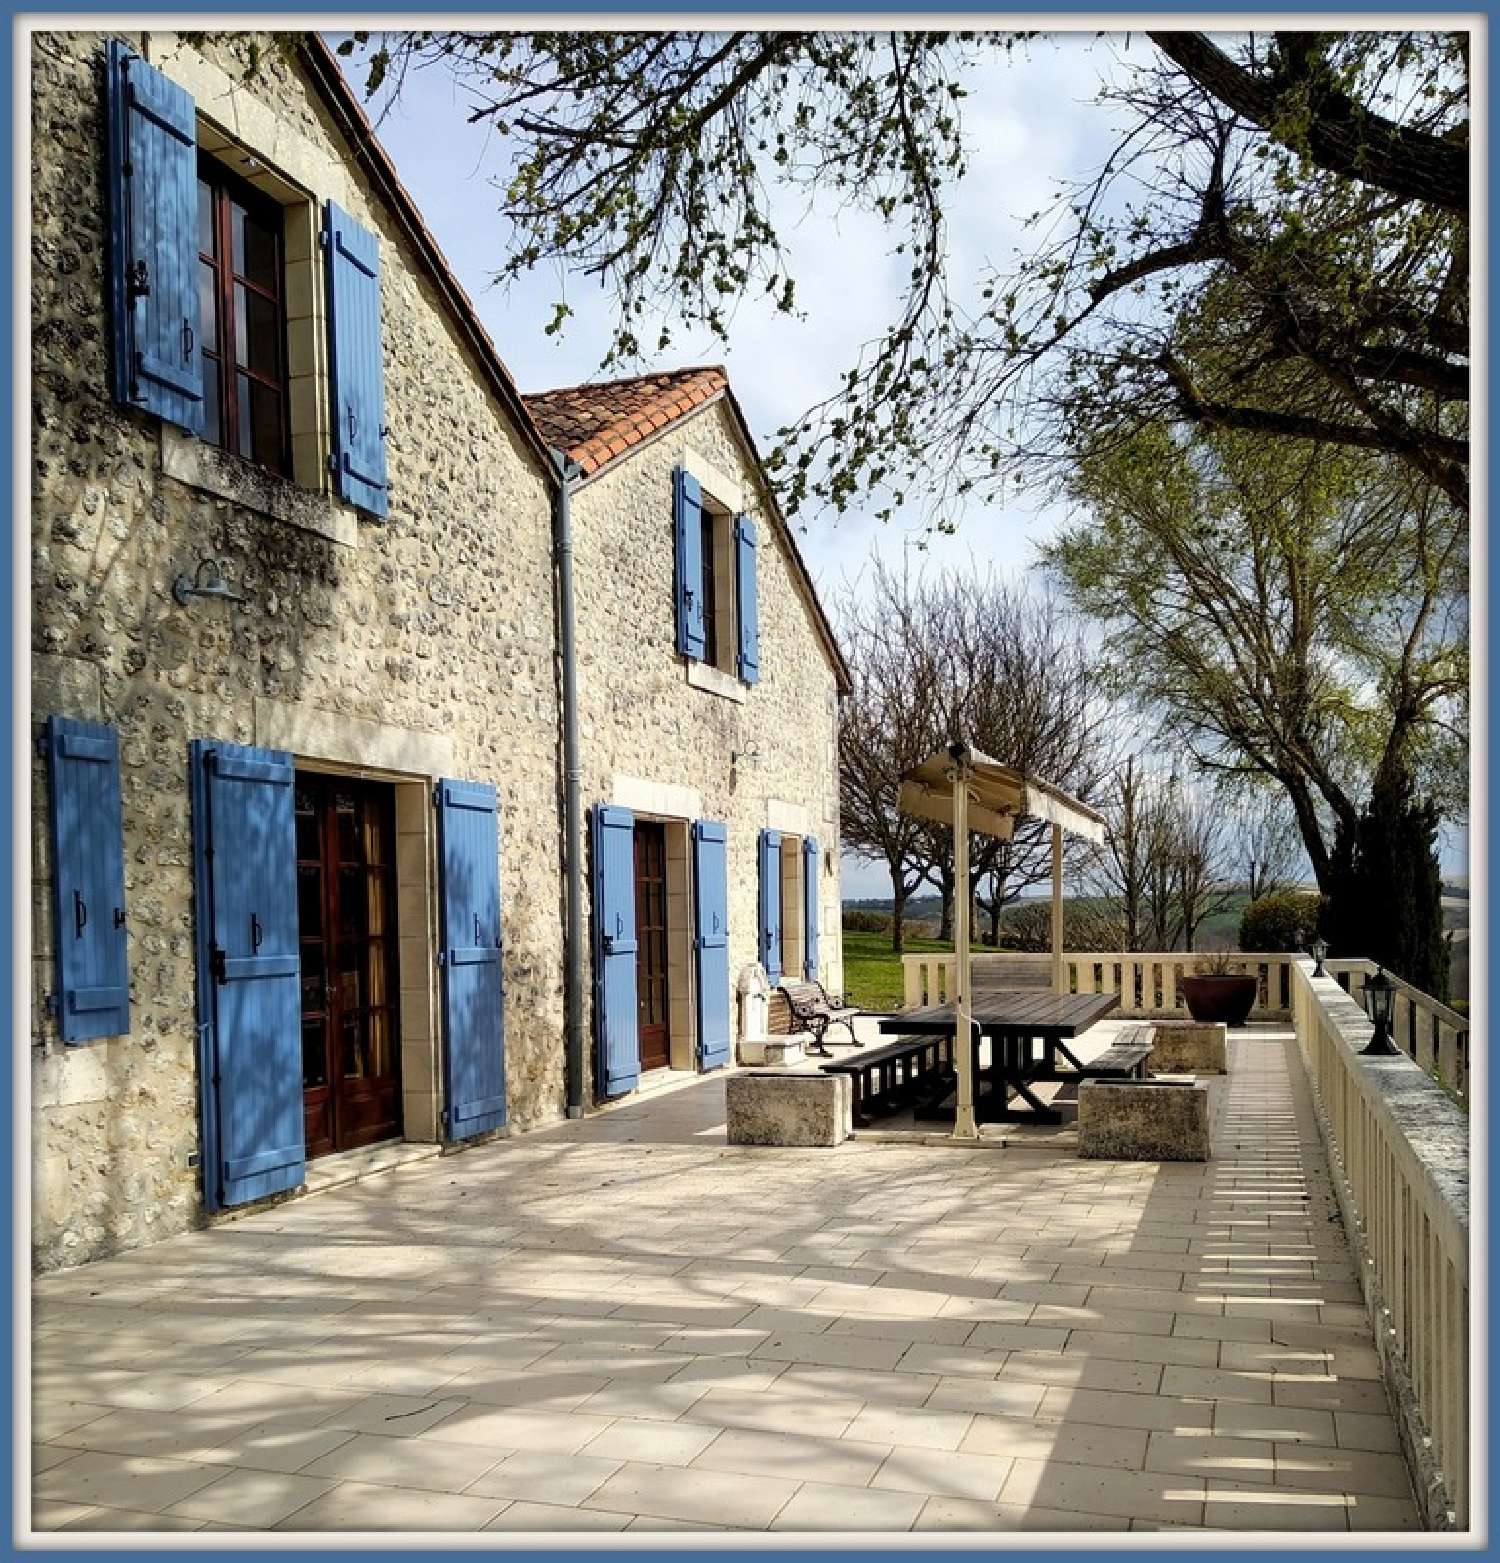  à vendre propriété Villebois-Lavalette Charente 2